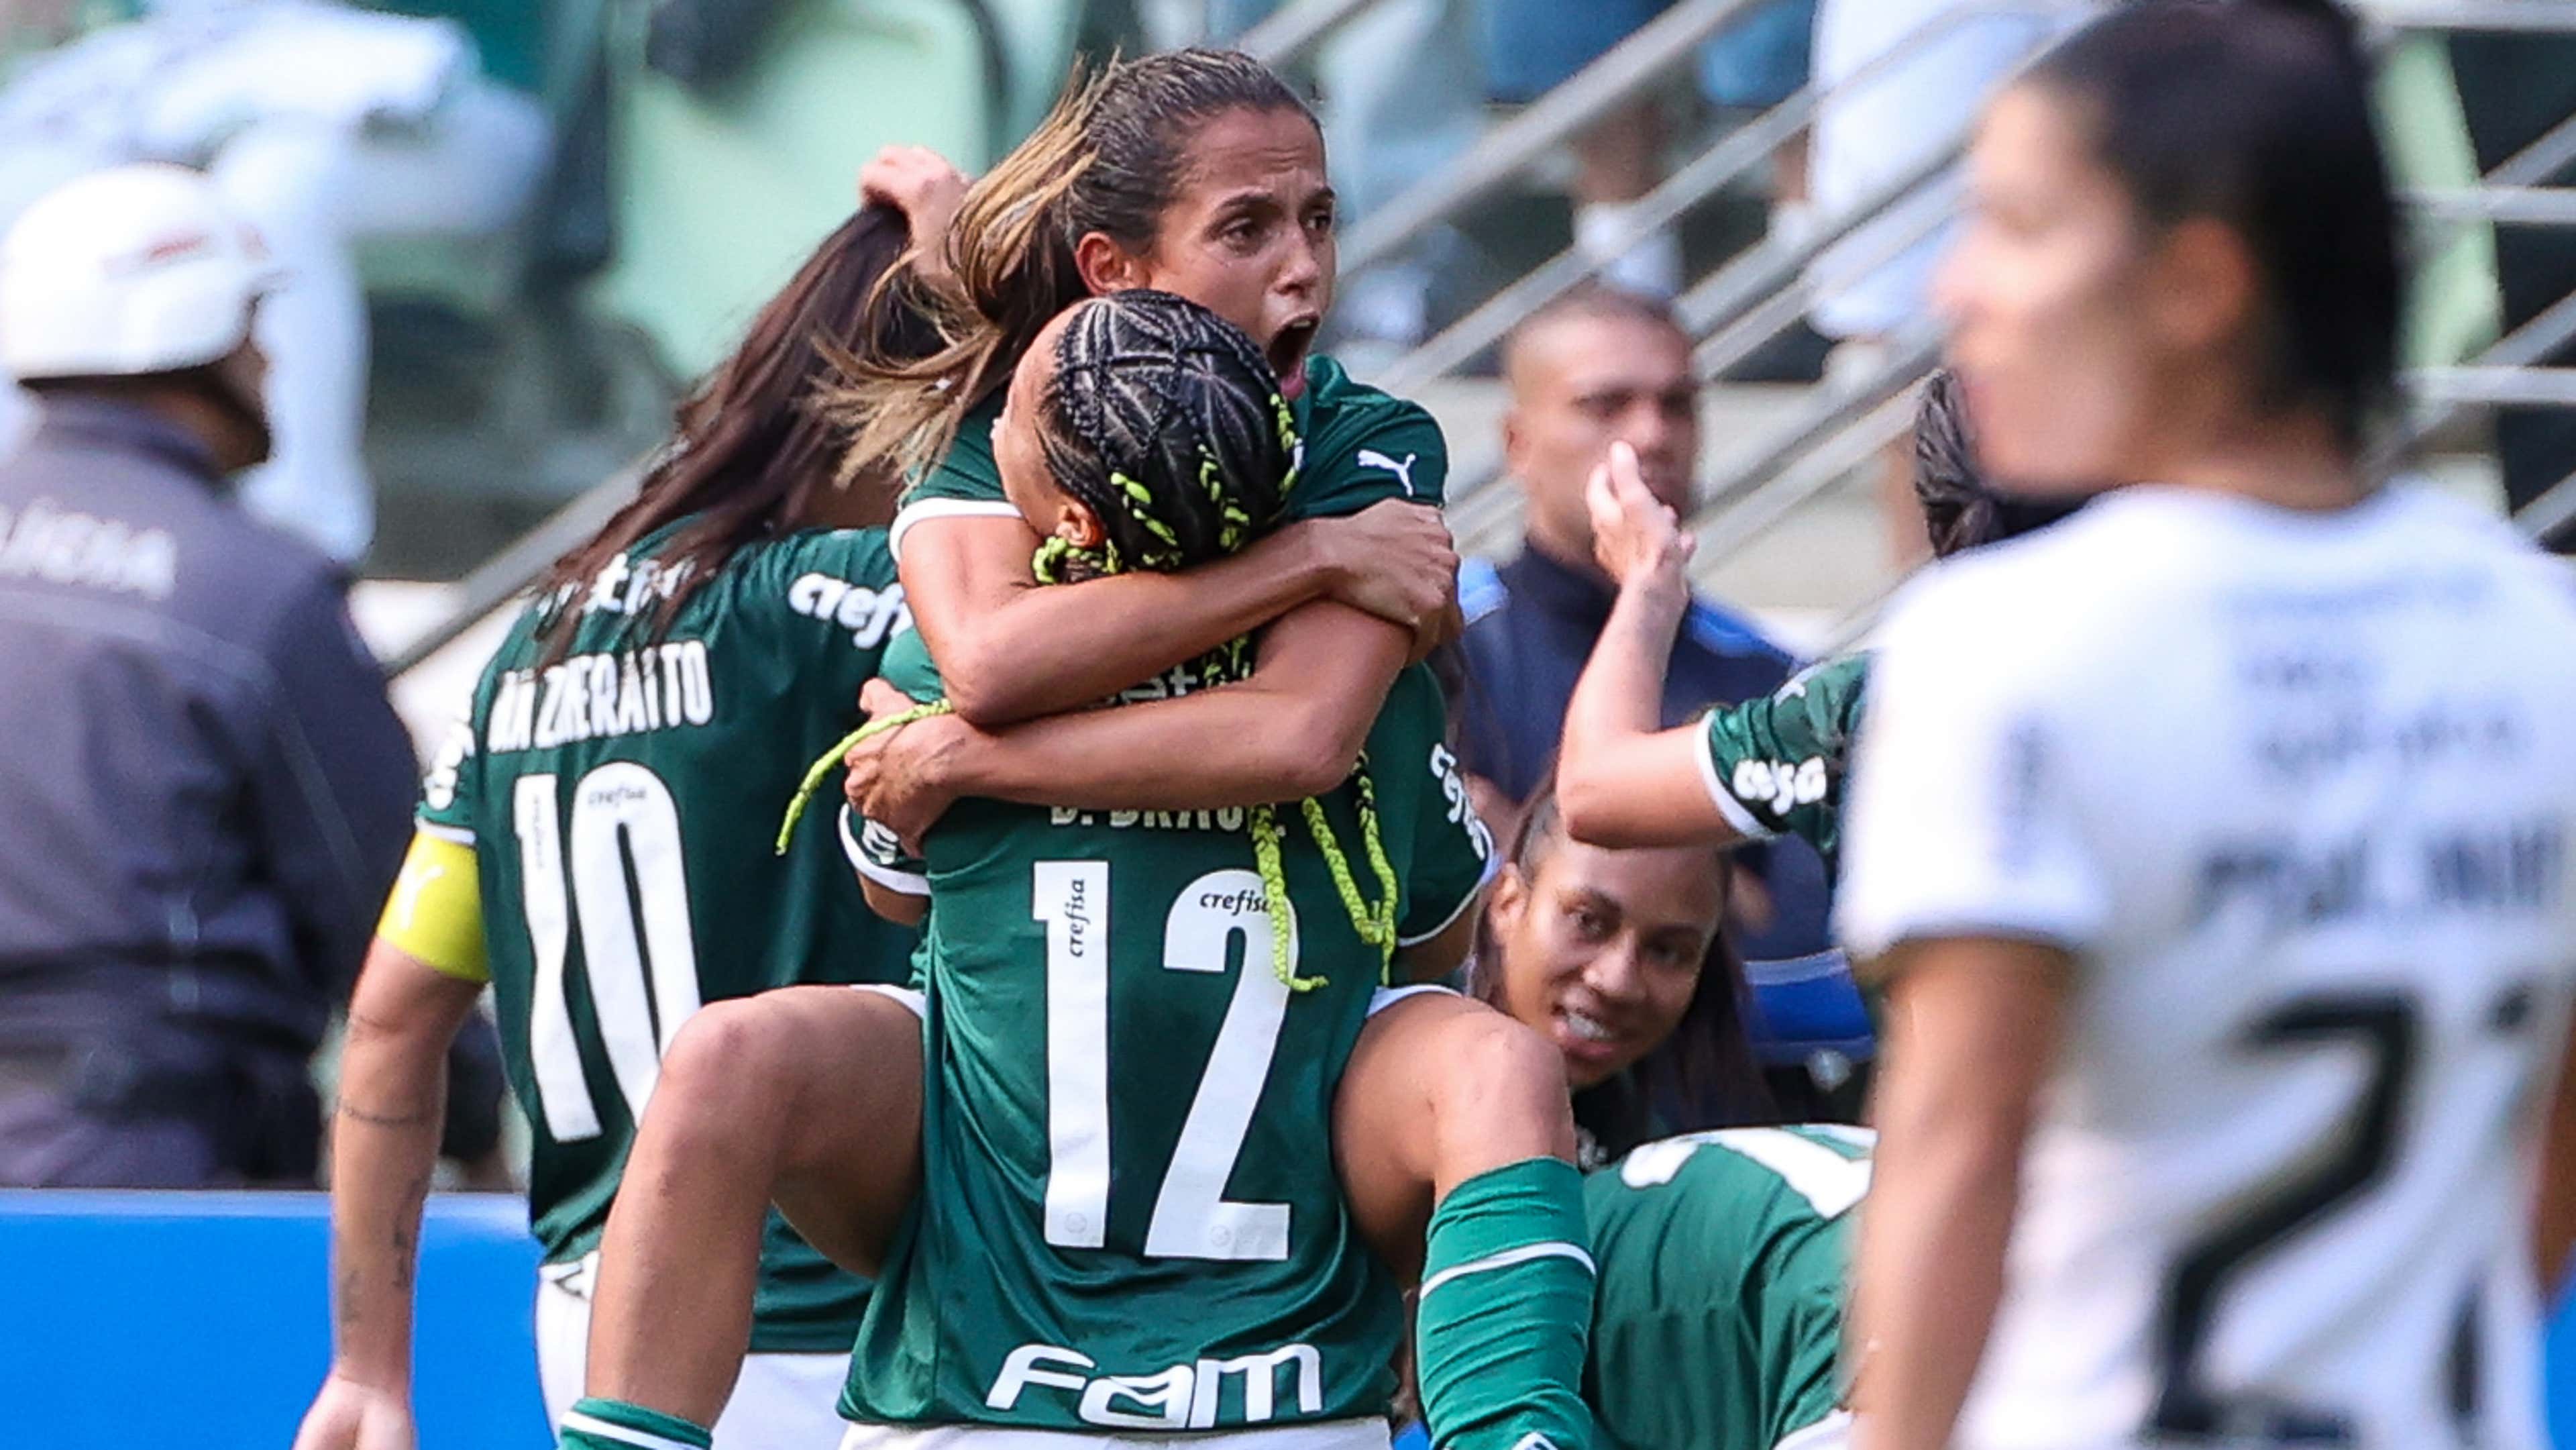 Santos x Palmeiras: onde assistir e prováveis escalações